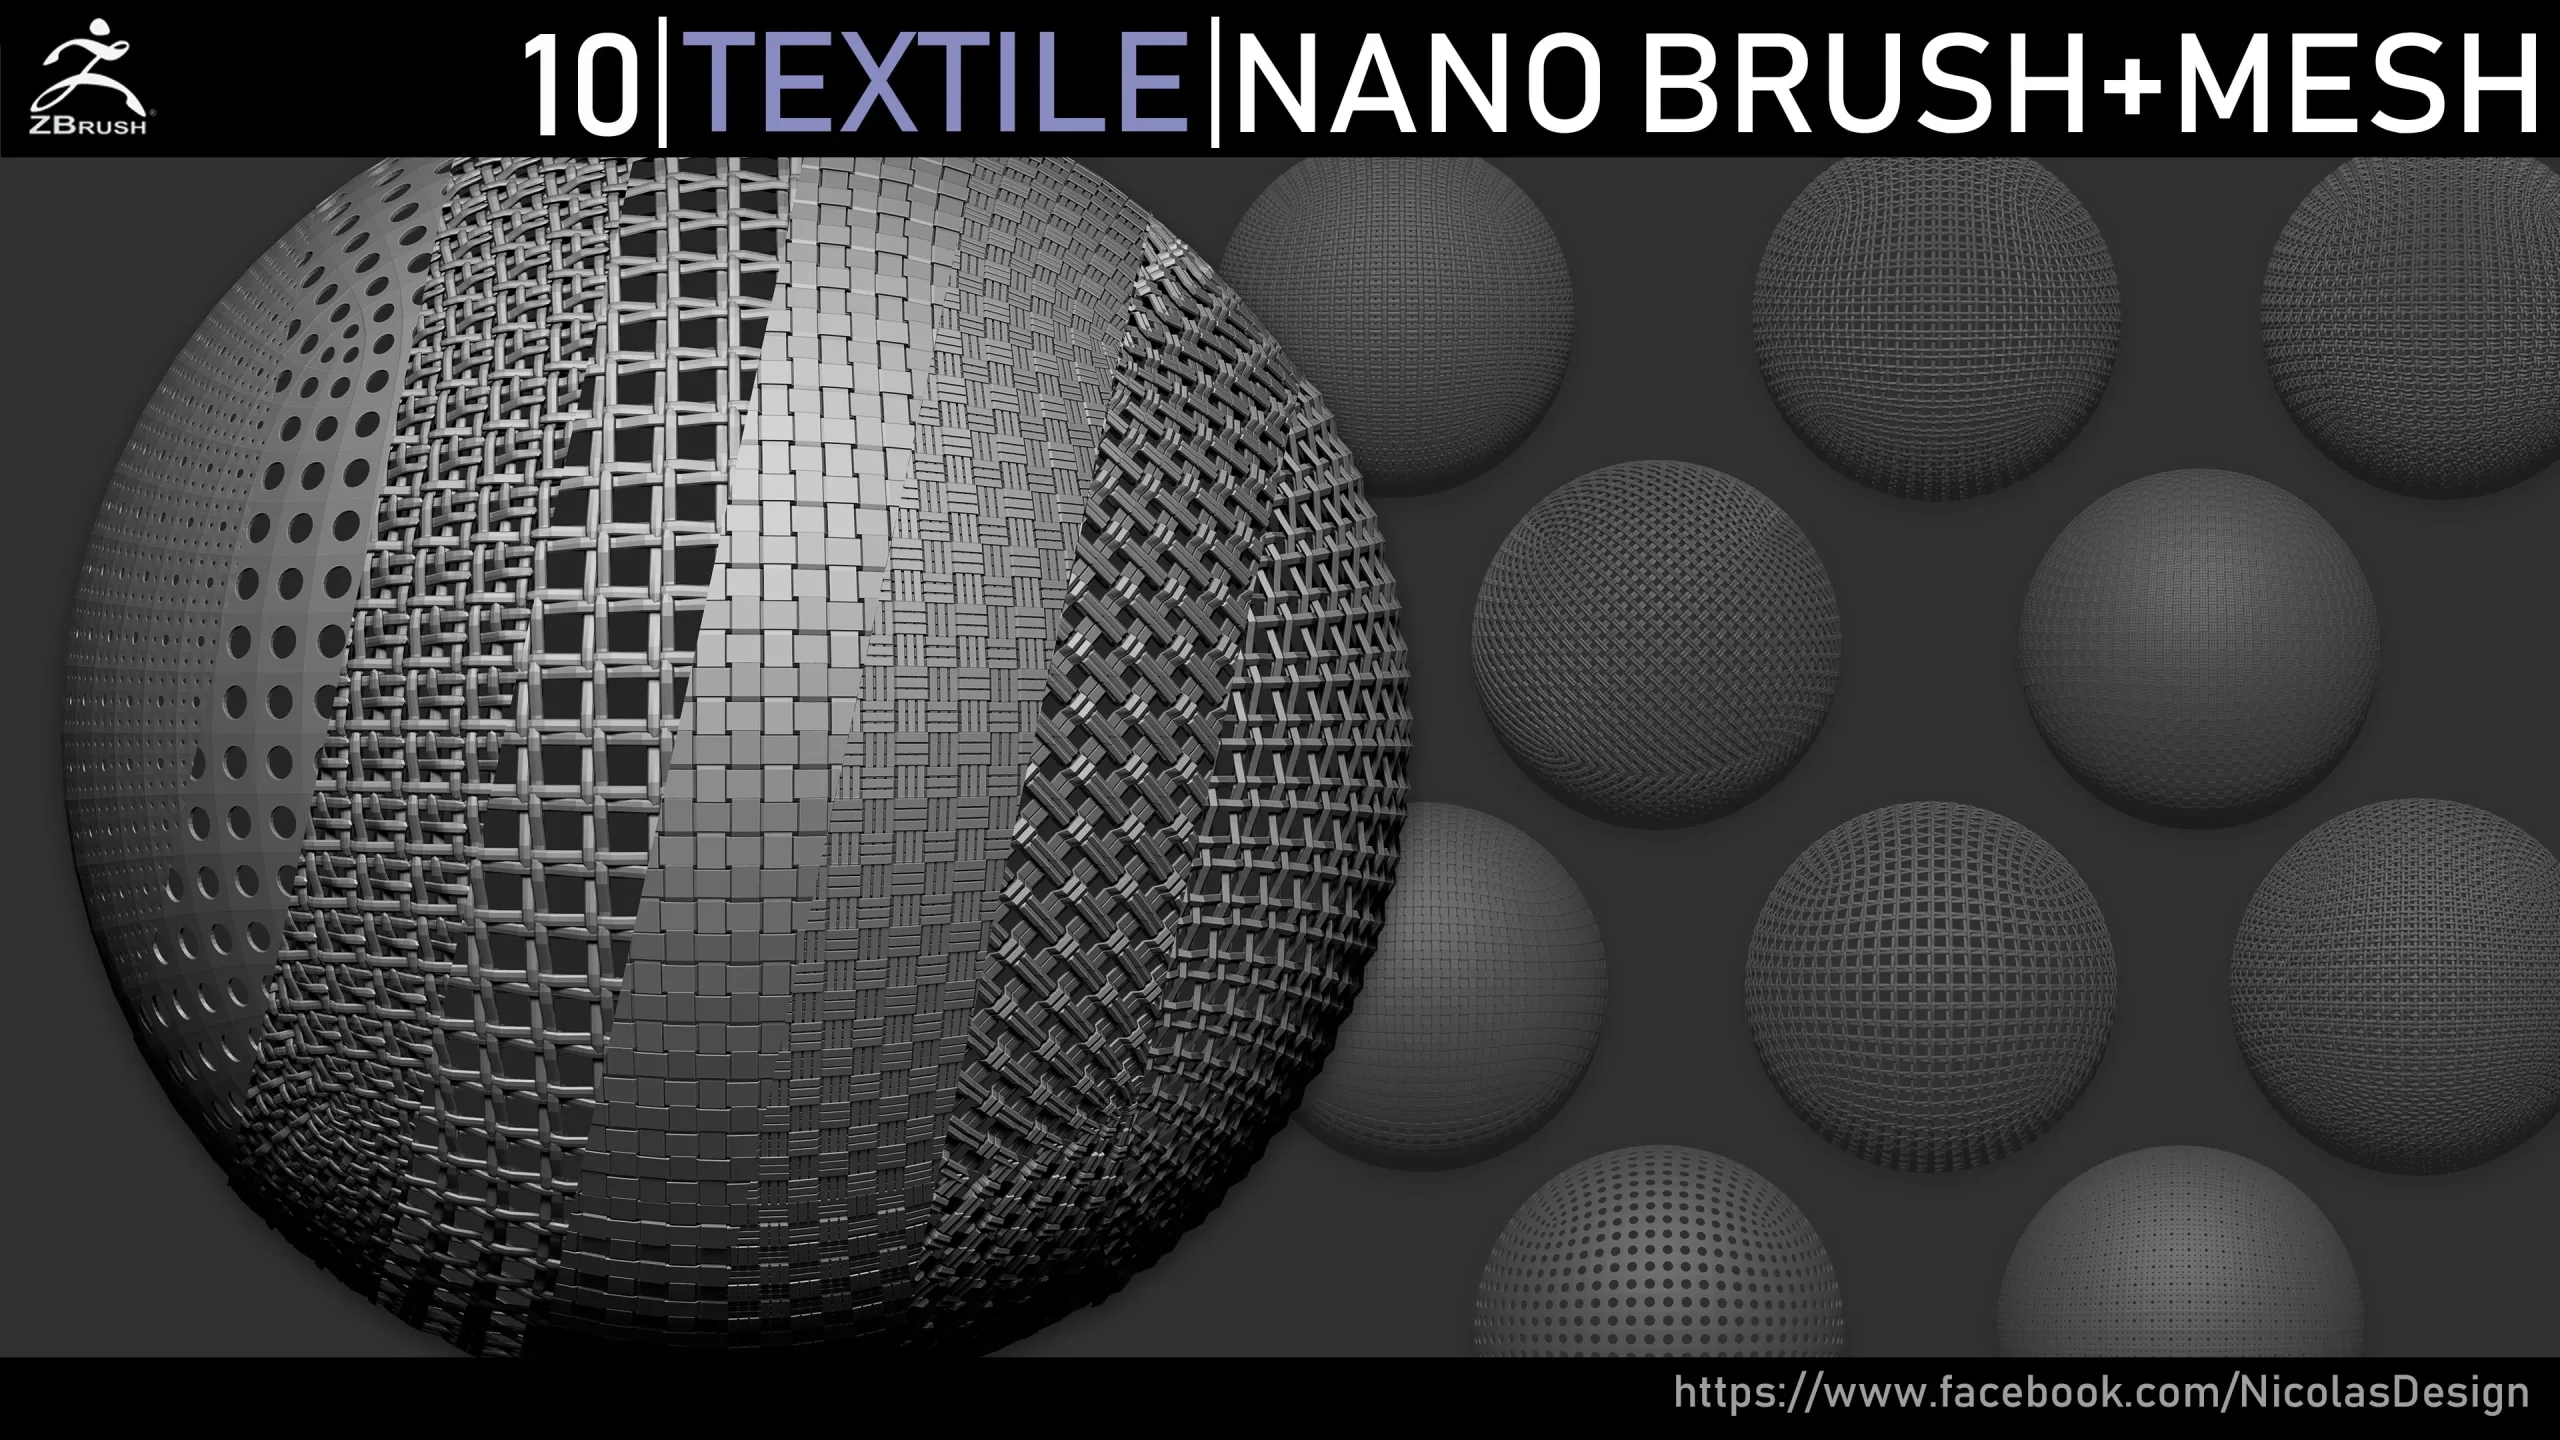 Zbrush - Textile Nano Brush + Meshes